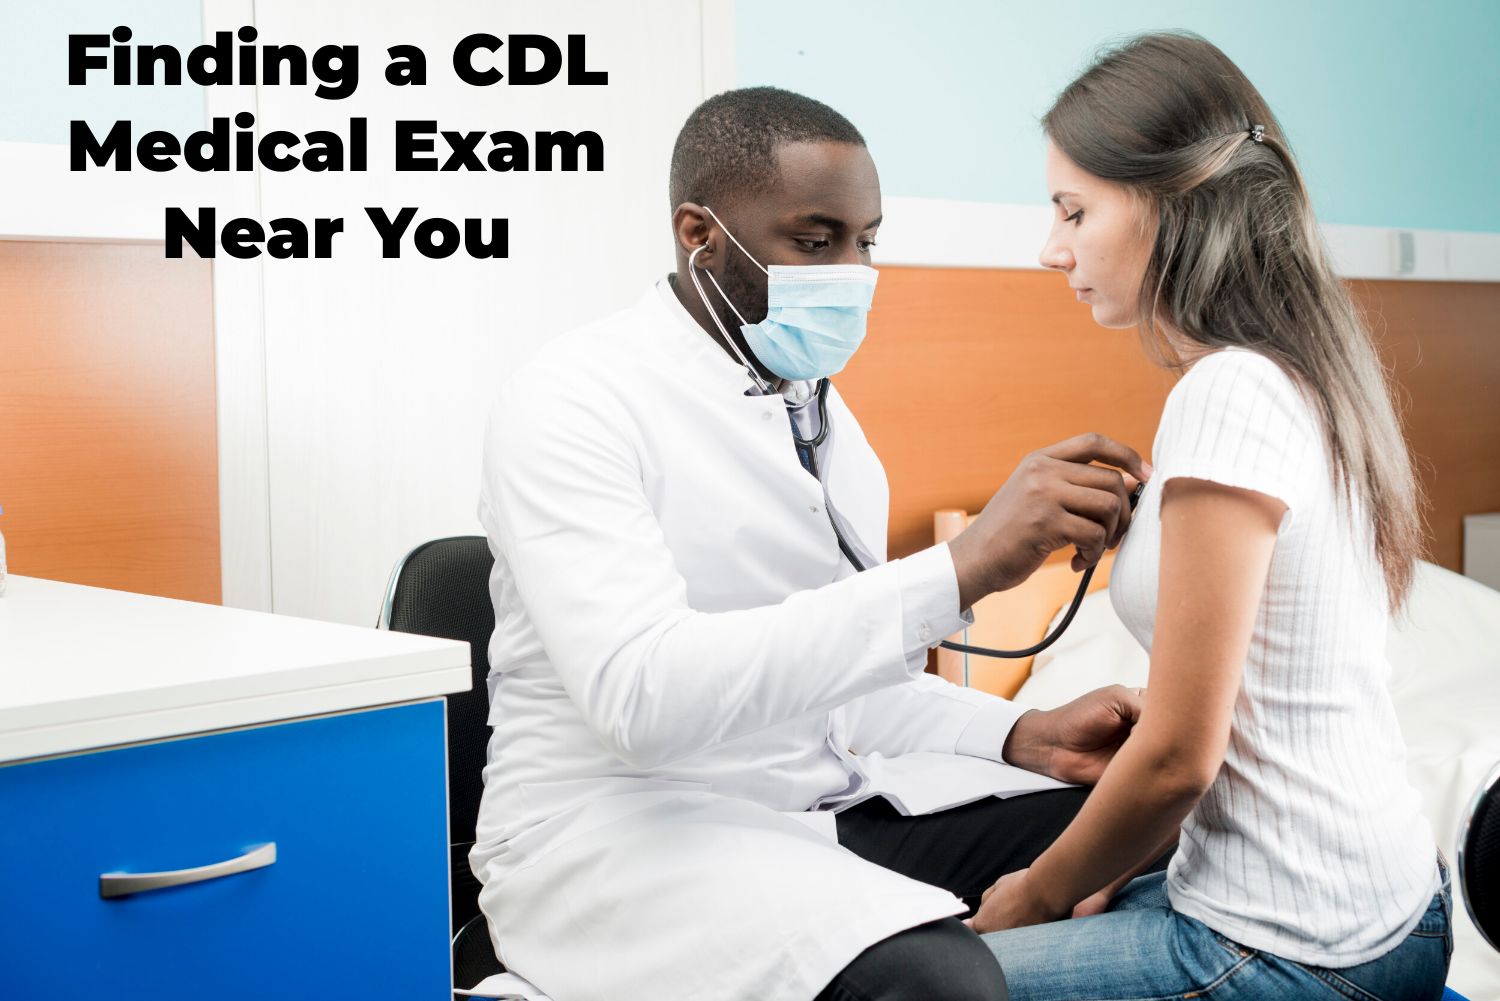 CDL Medical Exam Near You